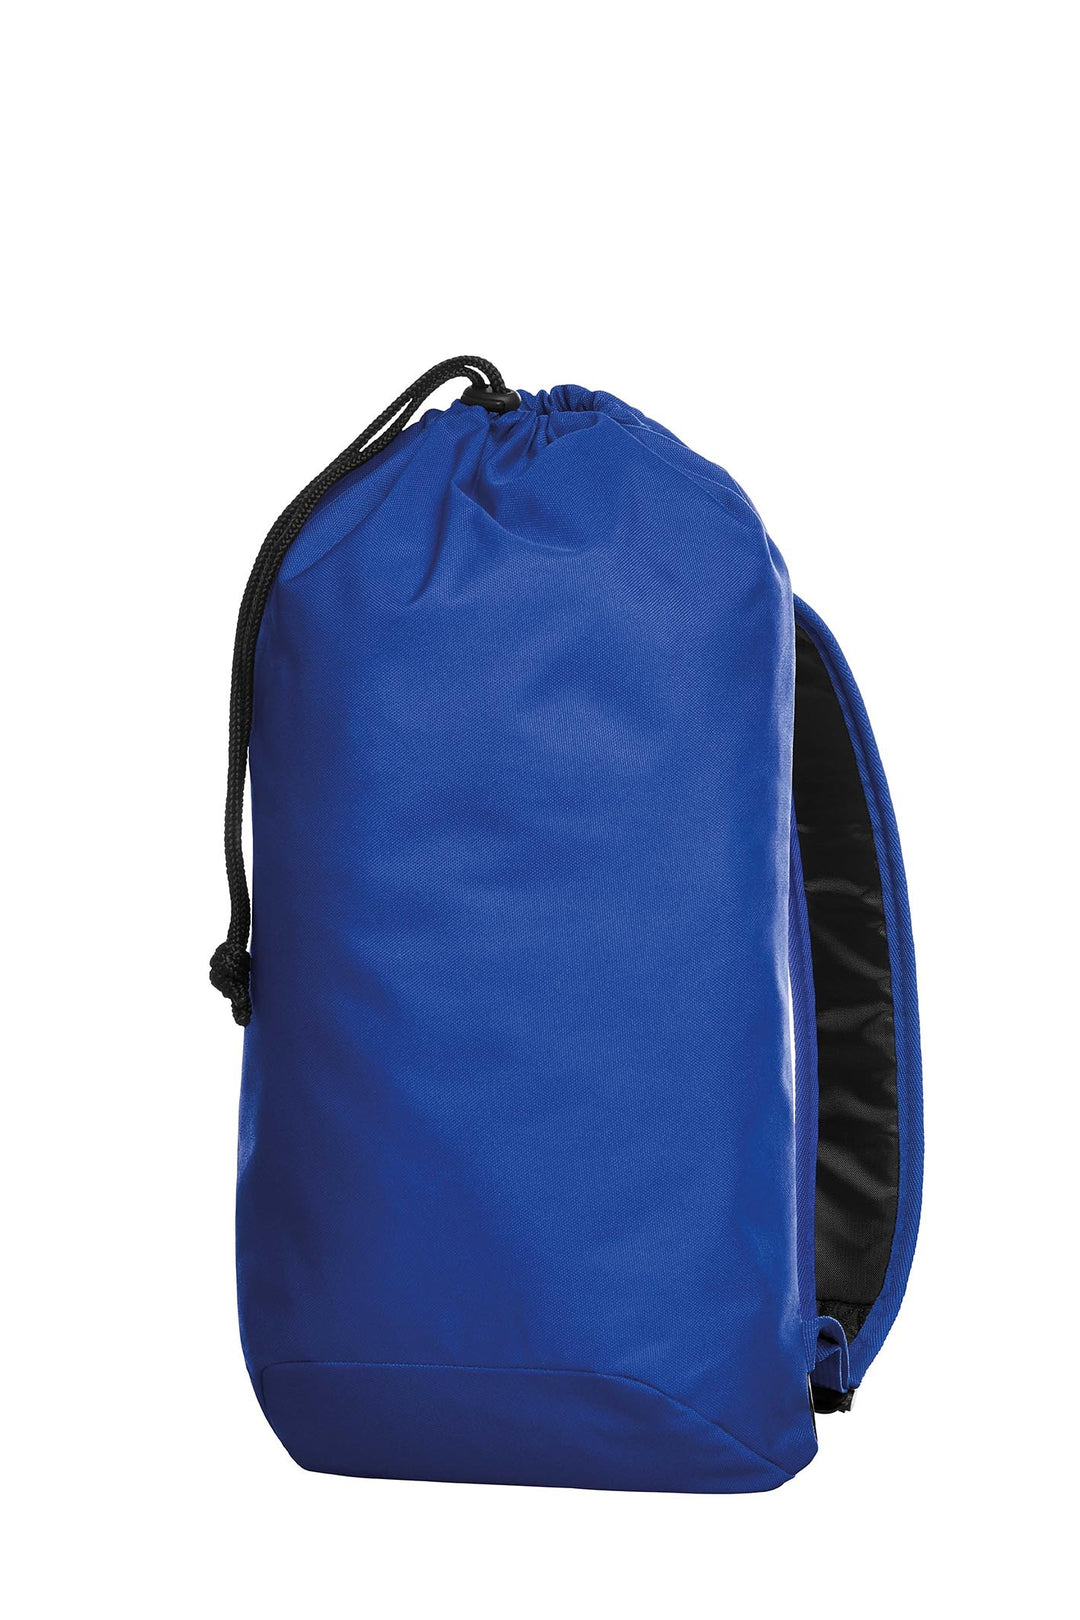 Halfar 1815026 Flow Backpack